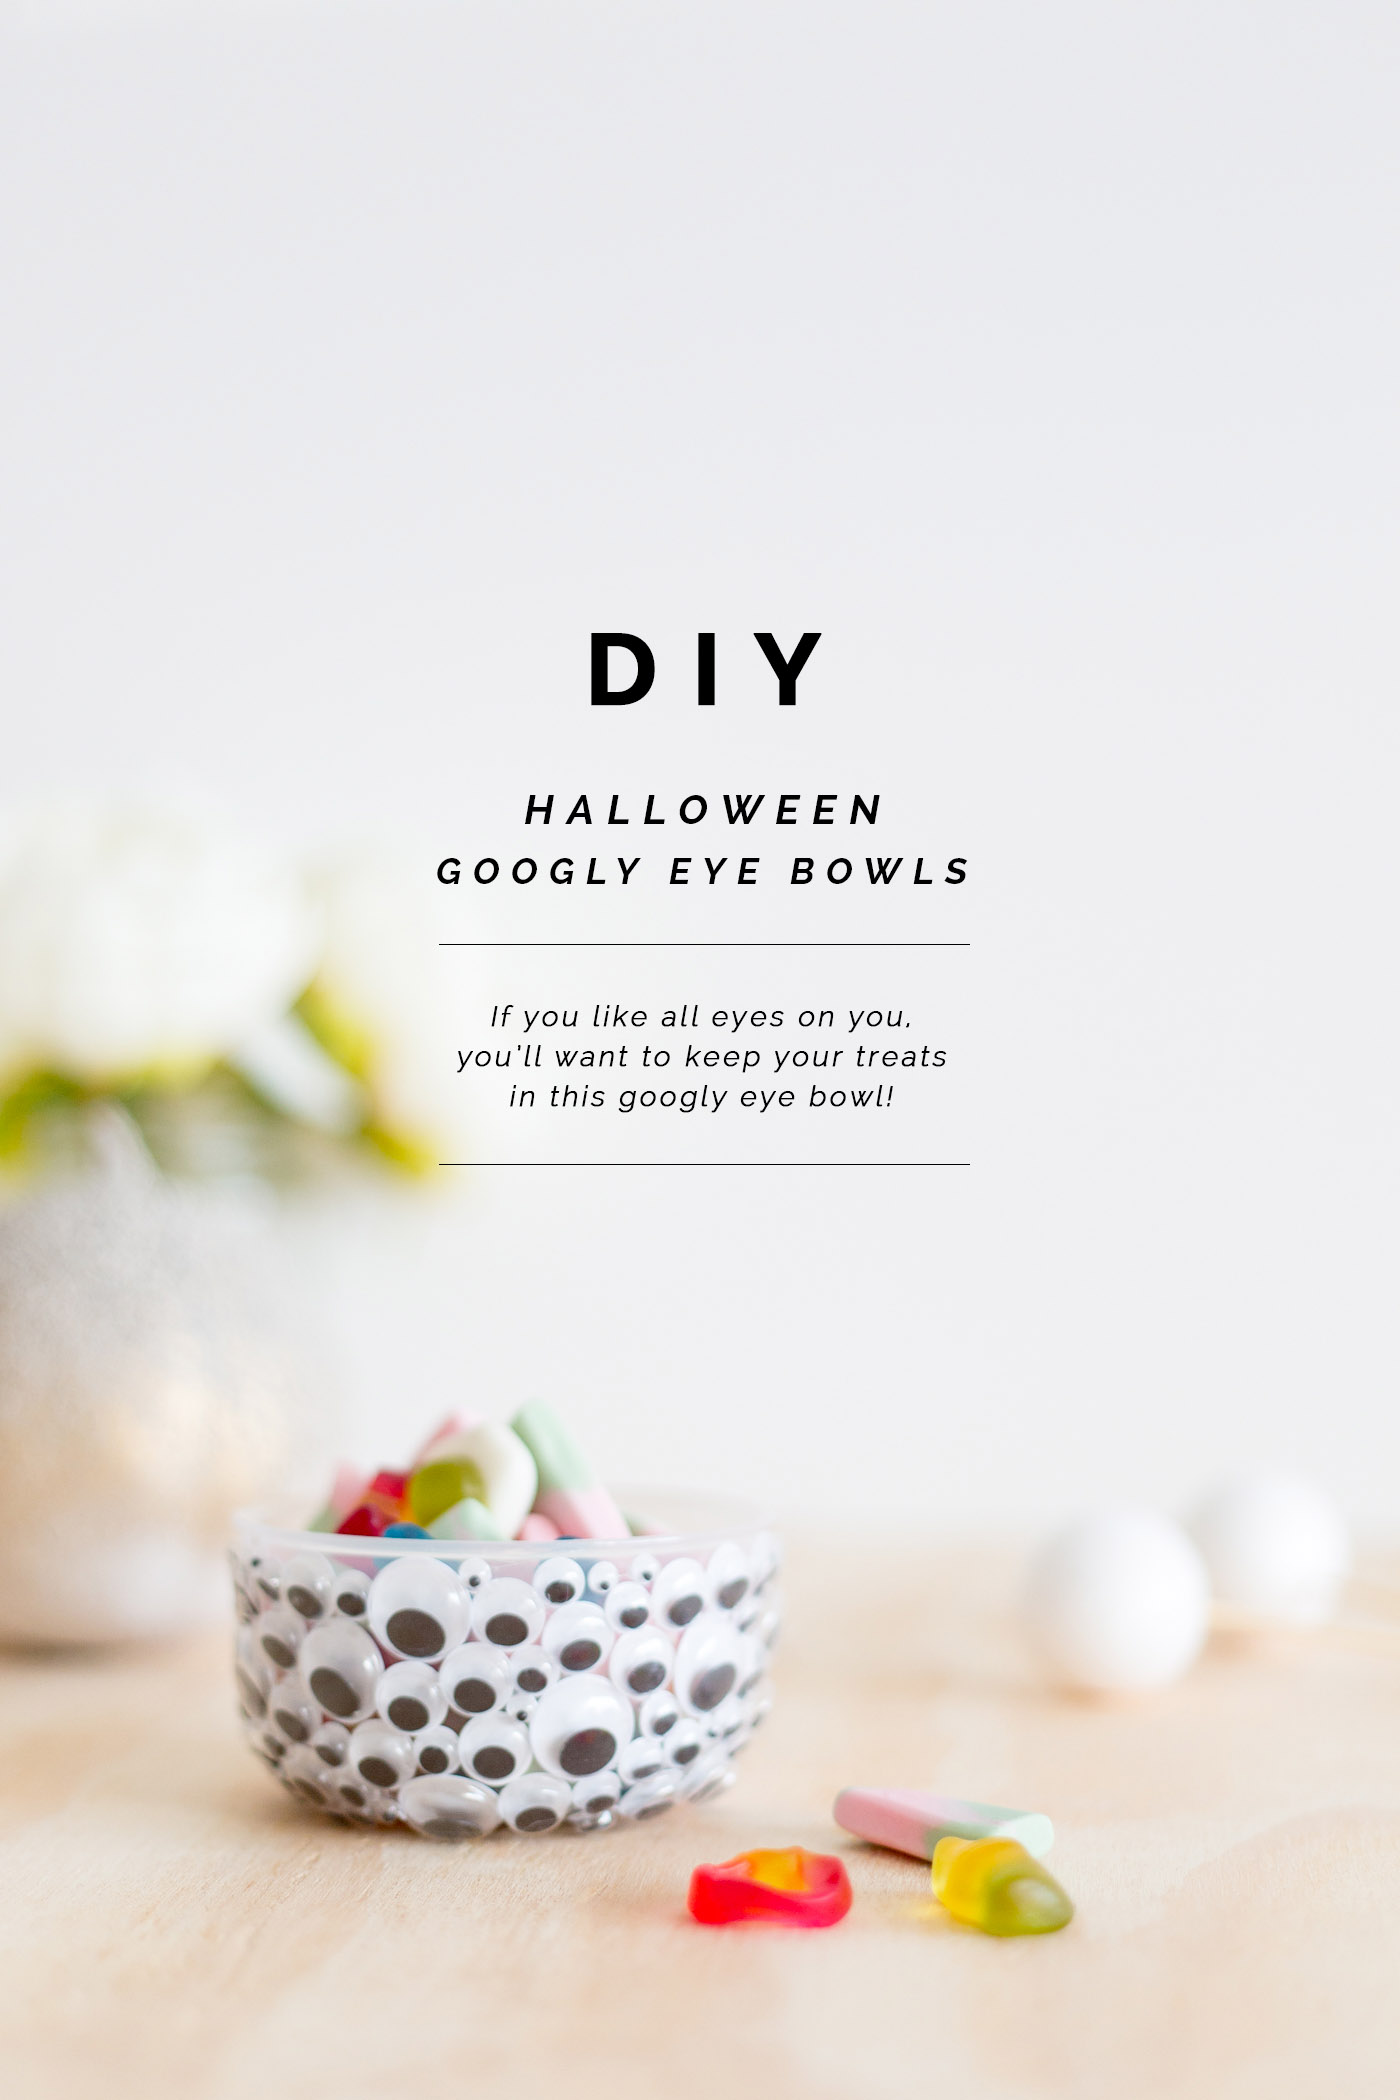 DIY Halloween Googly Eye Bowls | @fallfordiy